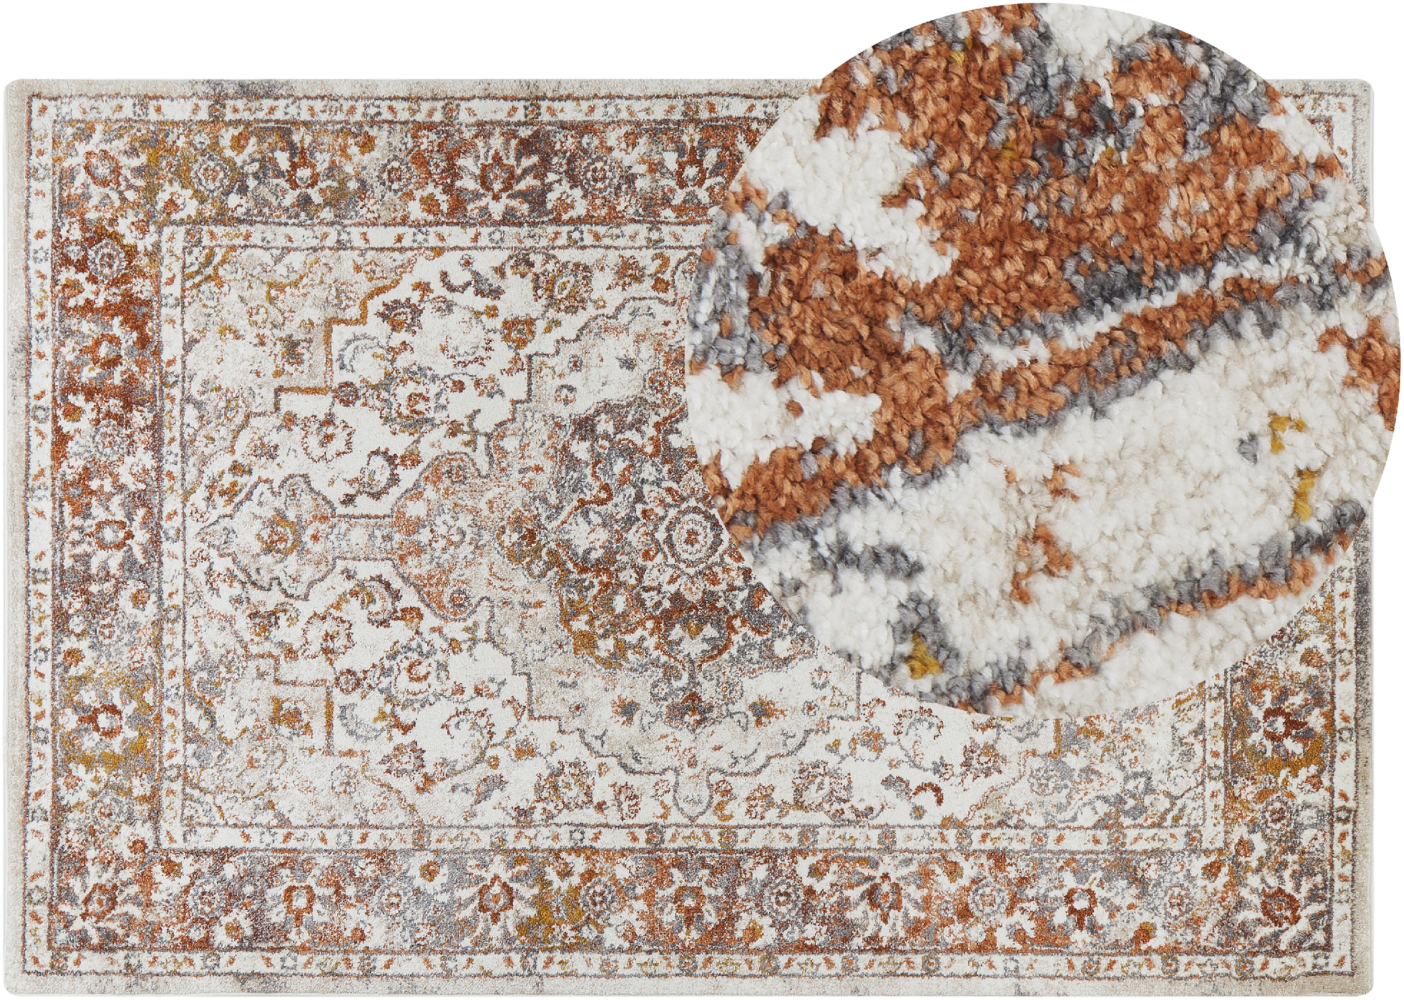 Teppich beige braun 200 x 300 cm orientalisches Muster VAYK Bild 1